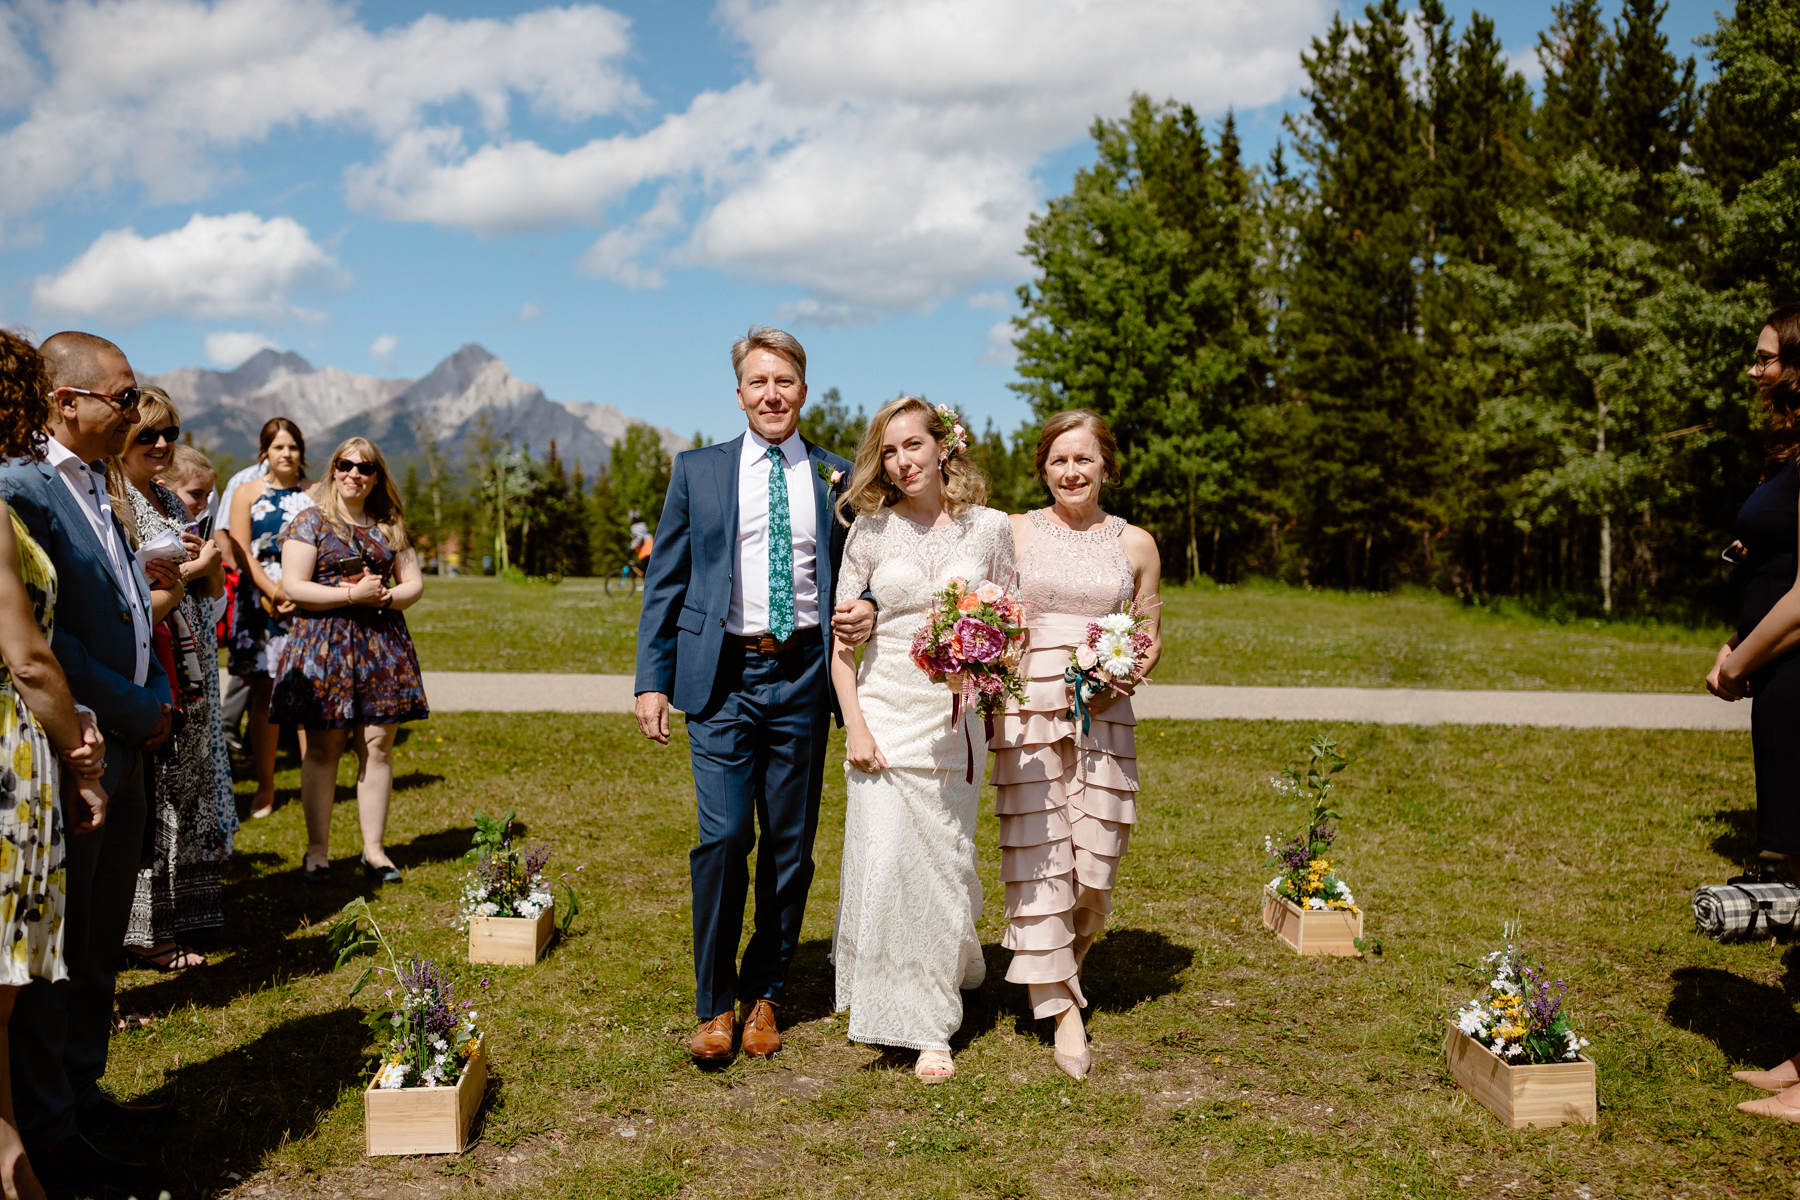 Kananaskis Wedding Photography at Pomeroy Mountain Lodge - Image  21